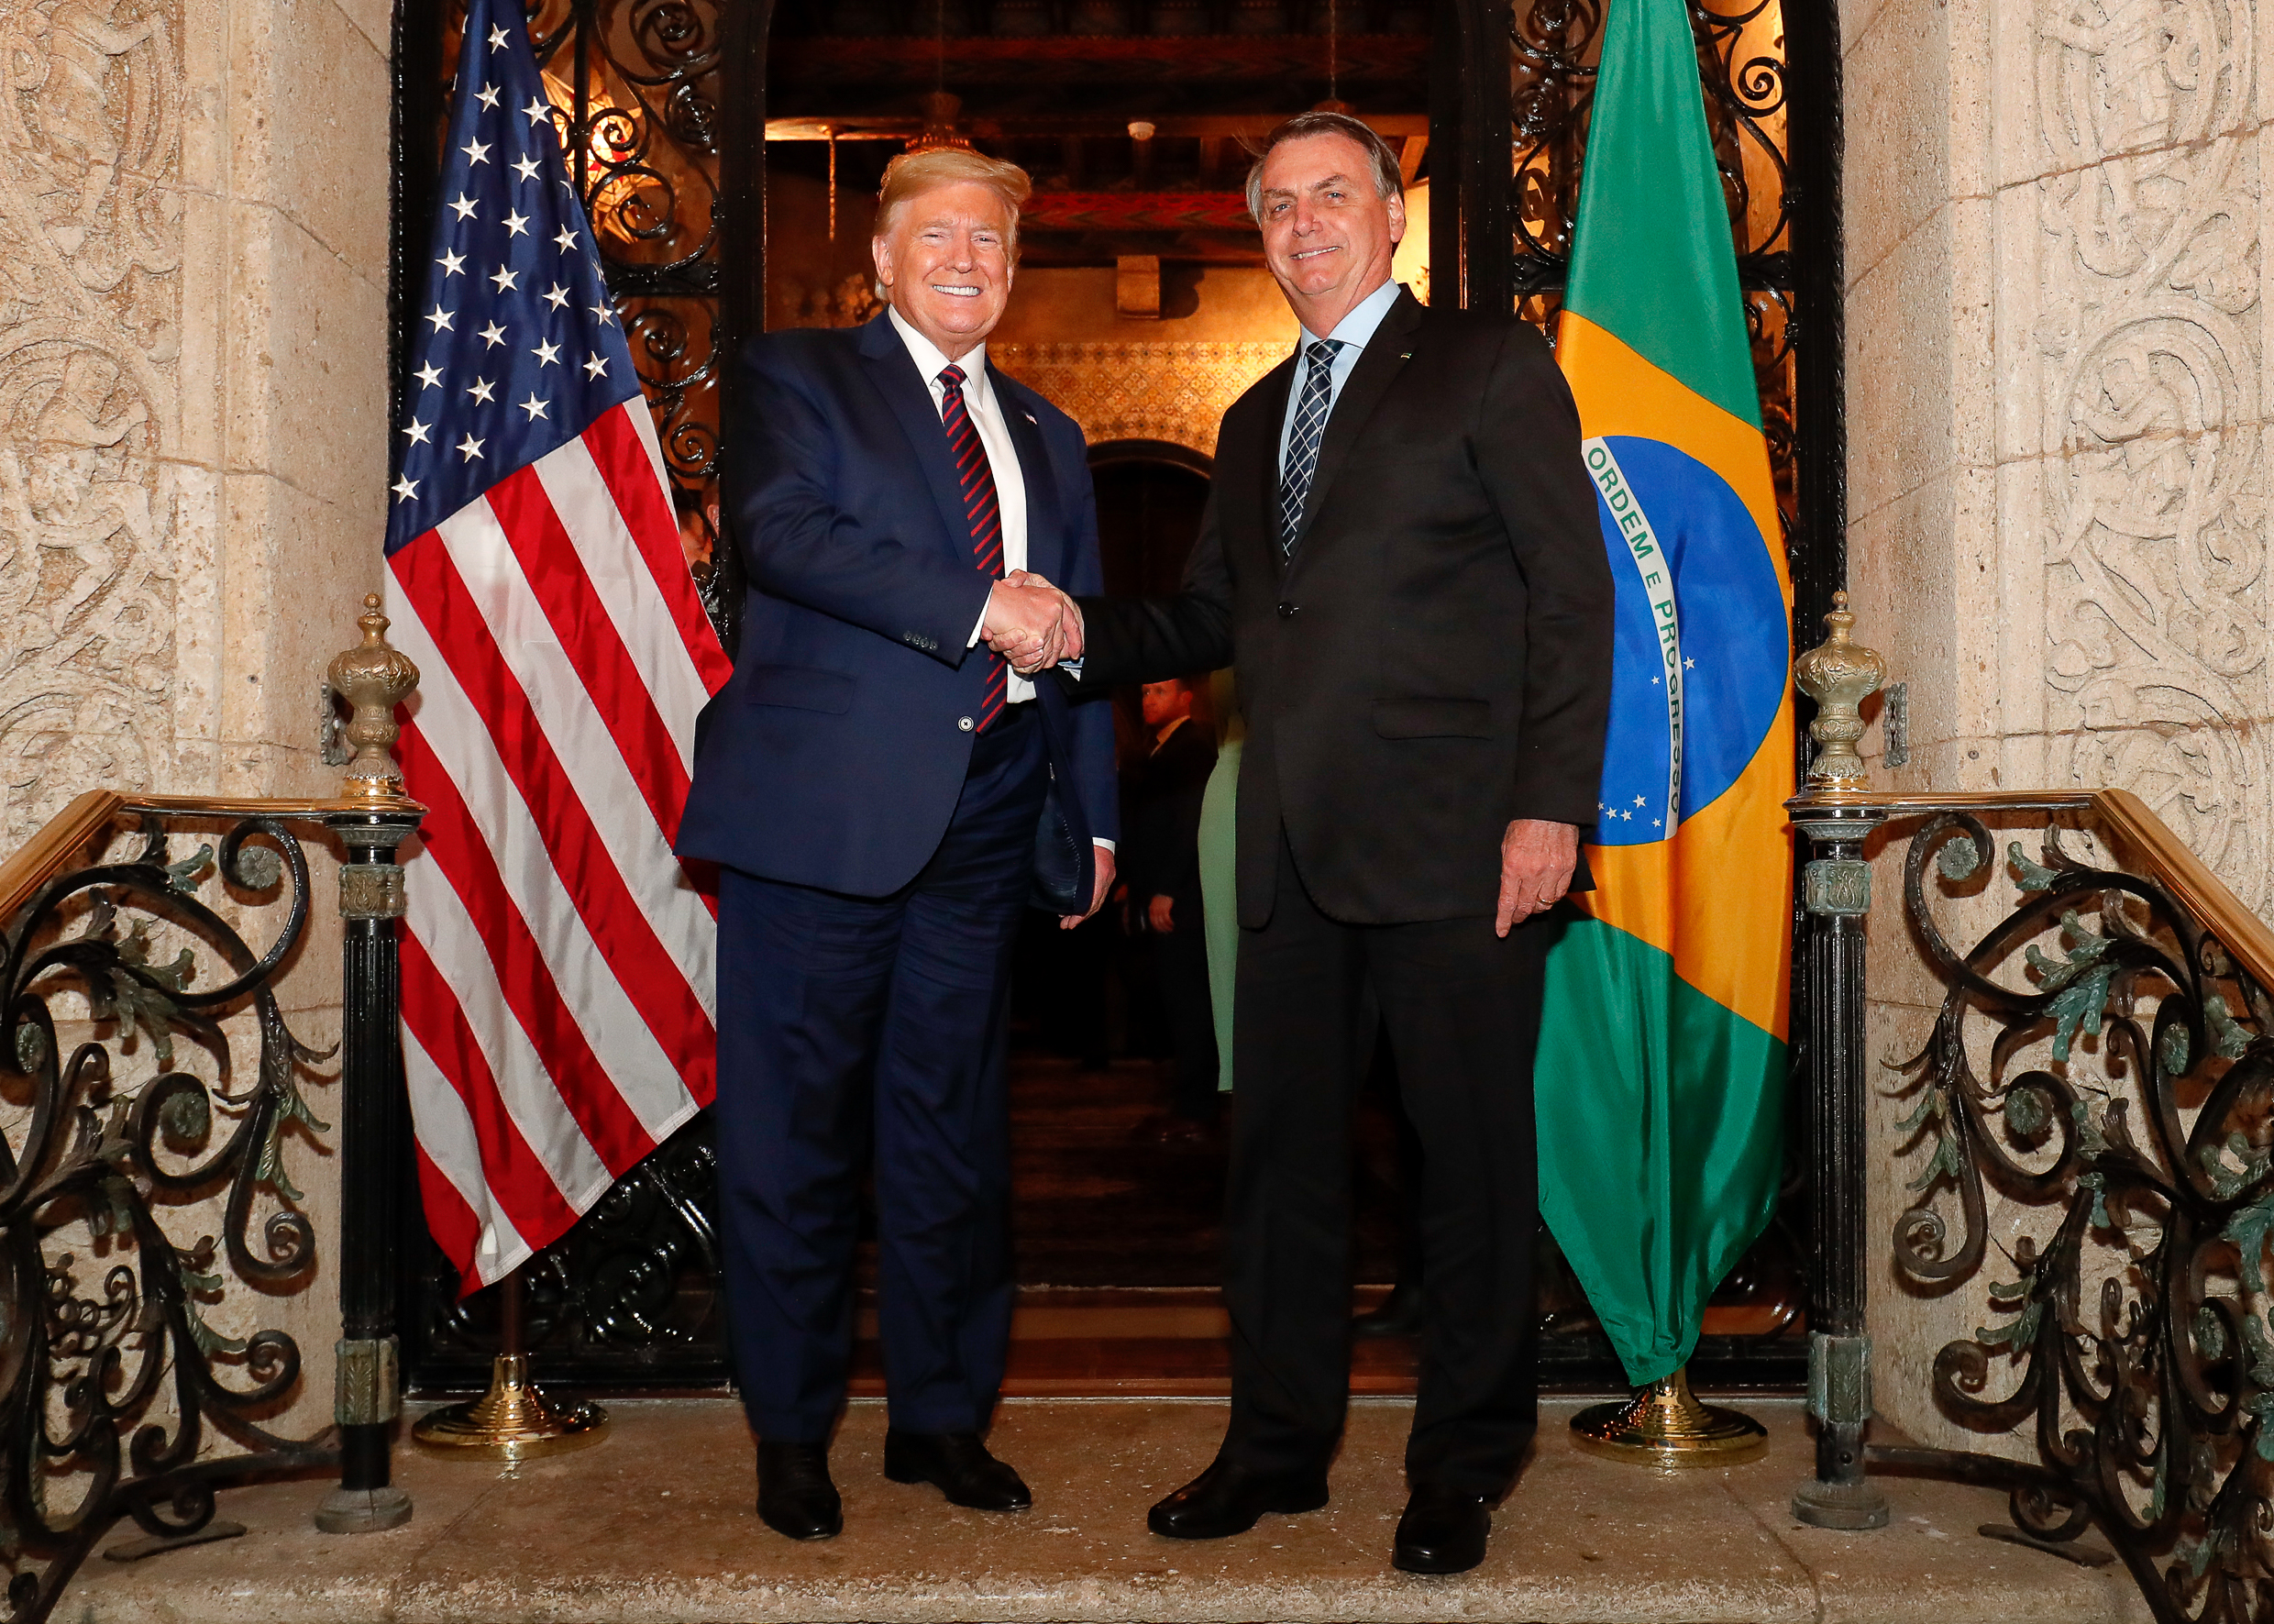 Elevamos a parceria entre o Brasil e os Estados Unidos ao seu melhor  momento”, diz Presidente Bolsonaro em evento virtual — Planalto